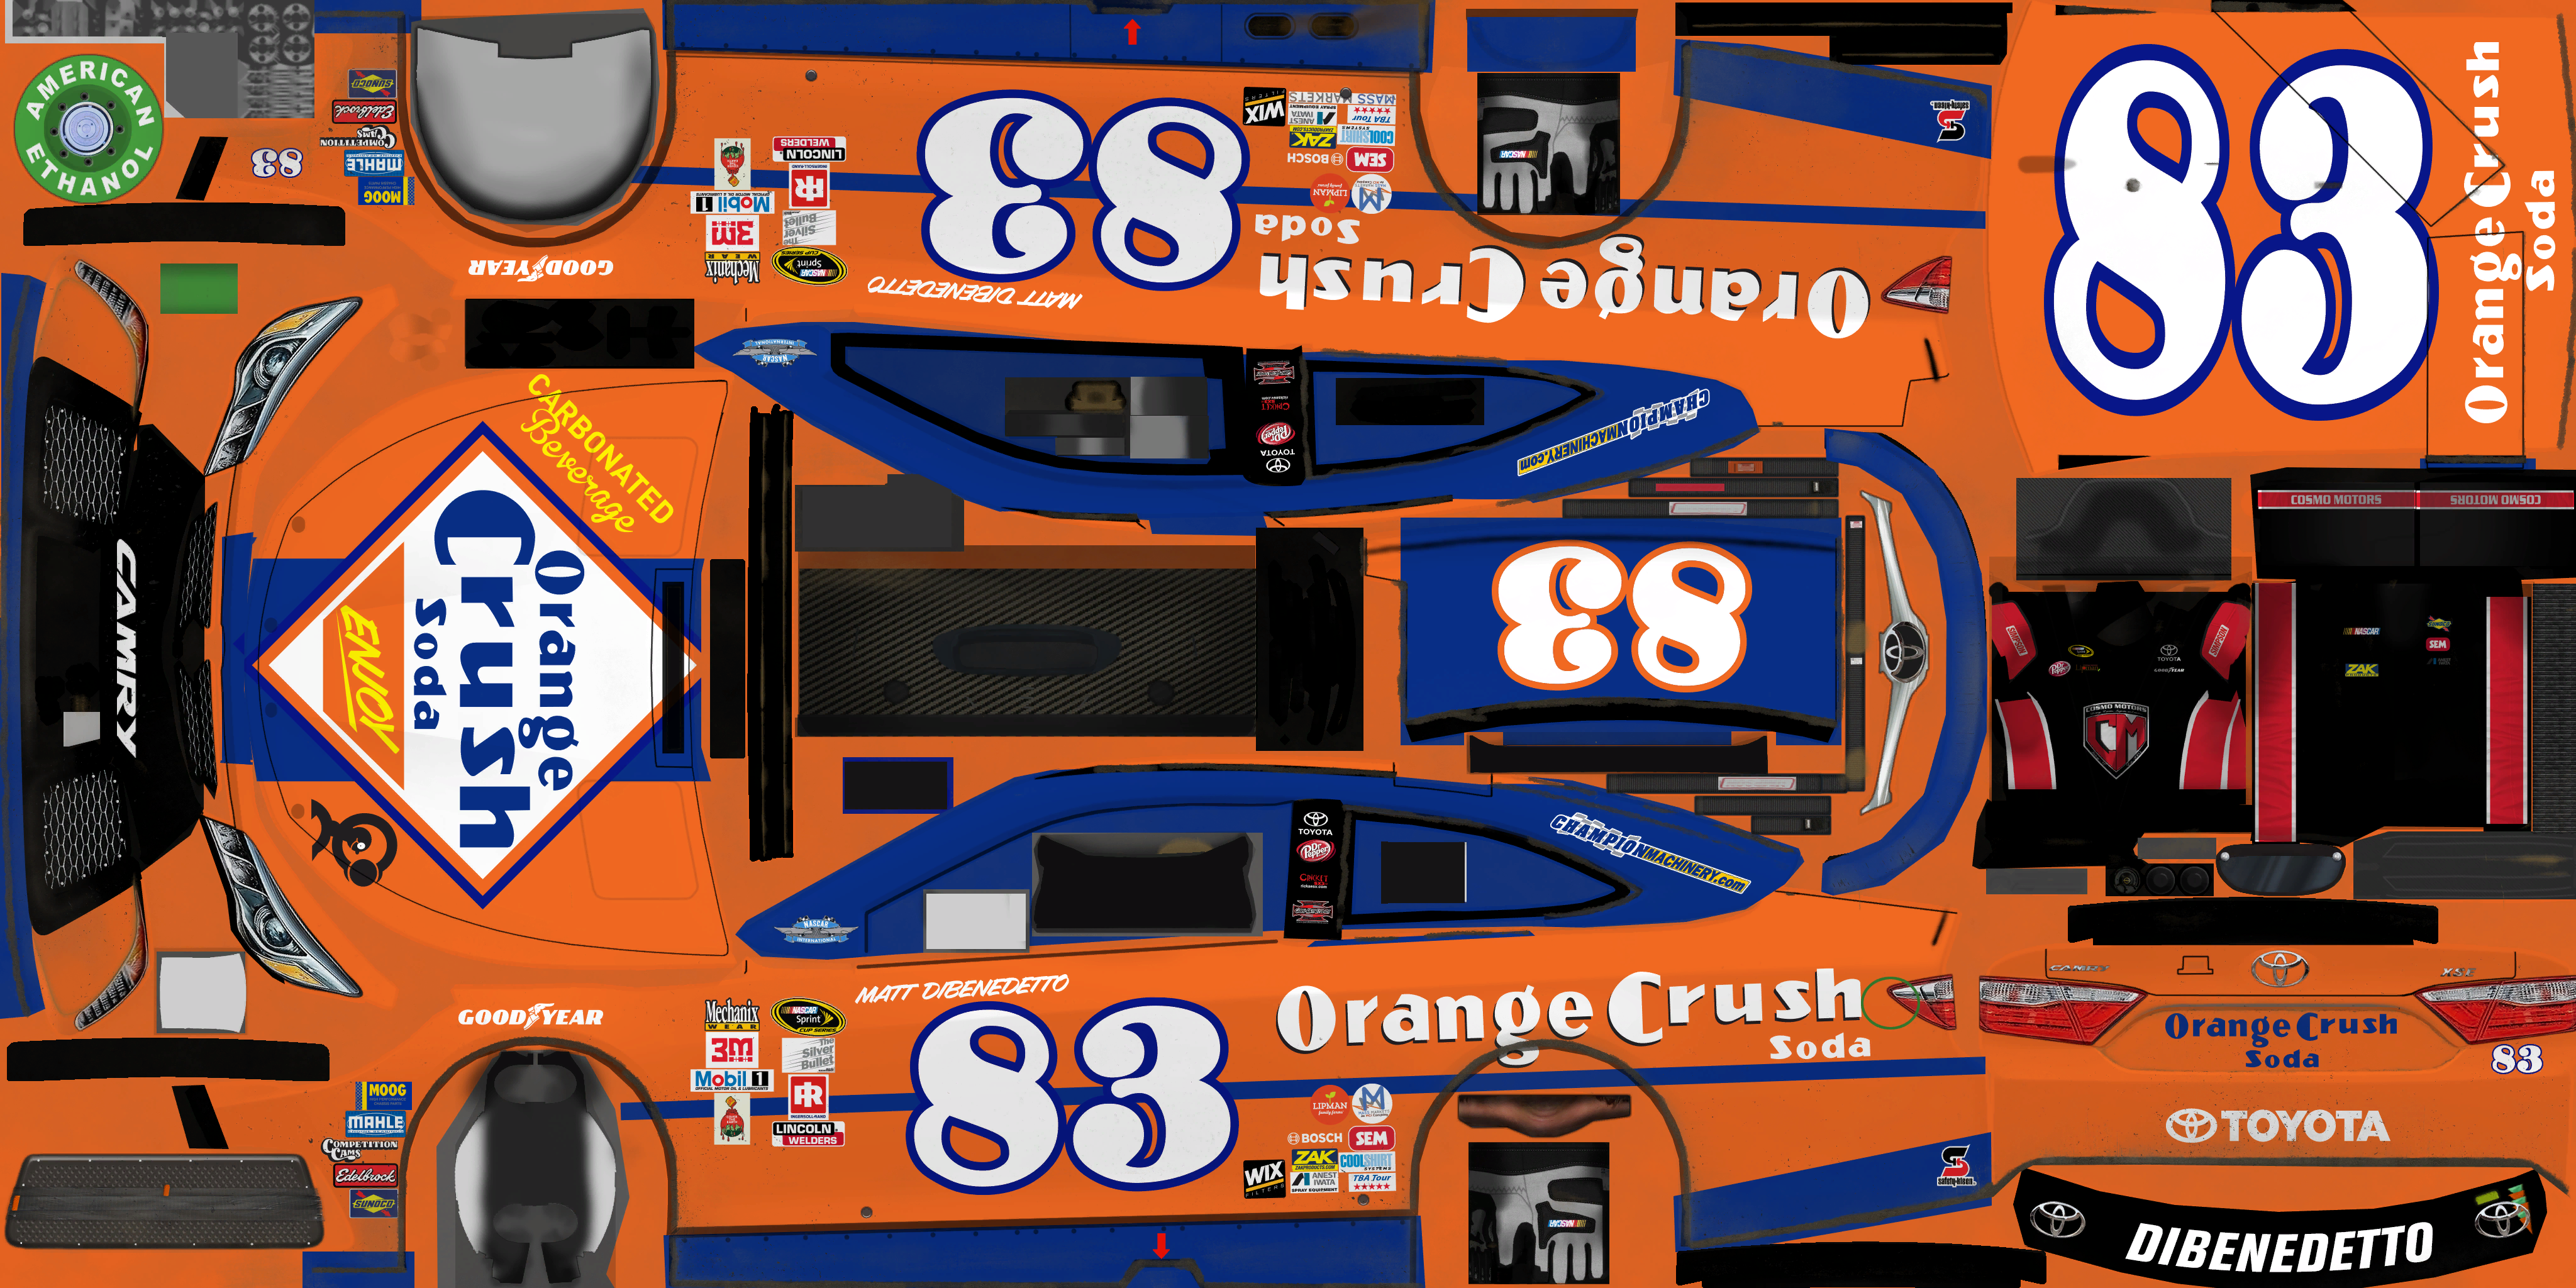 NASCAR Heat Evolution - #83 Matt DiBenedetto (Orange Crush Soda Throwback)